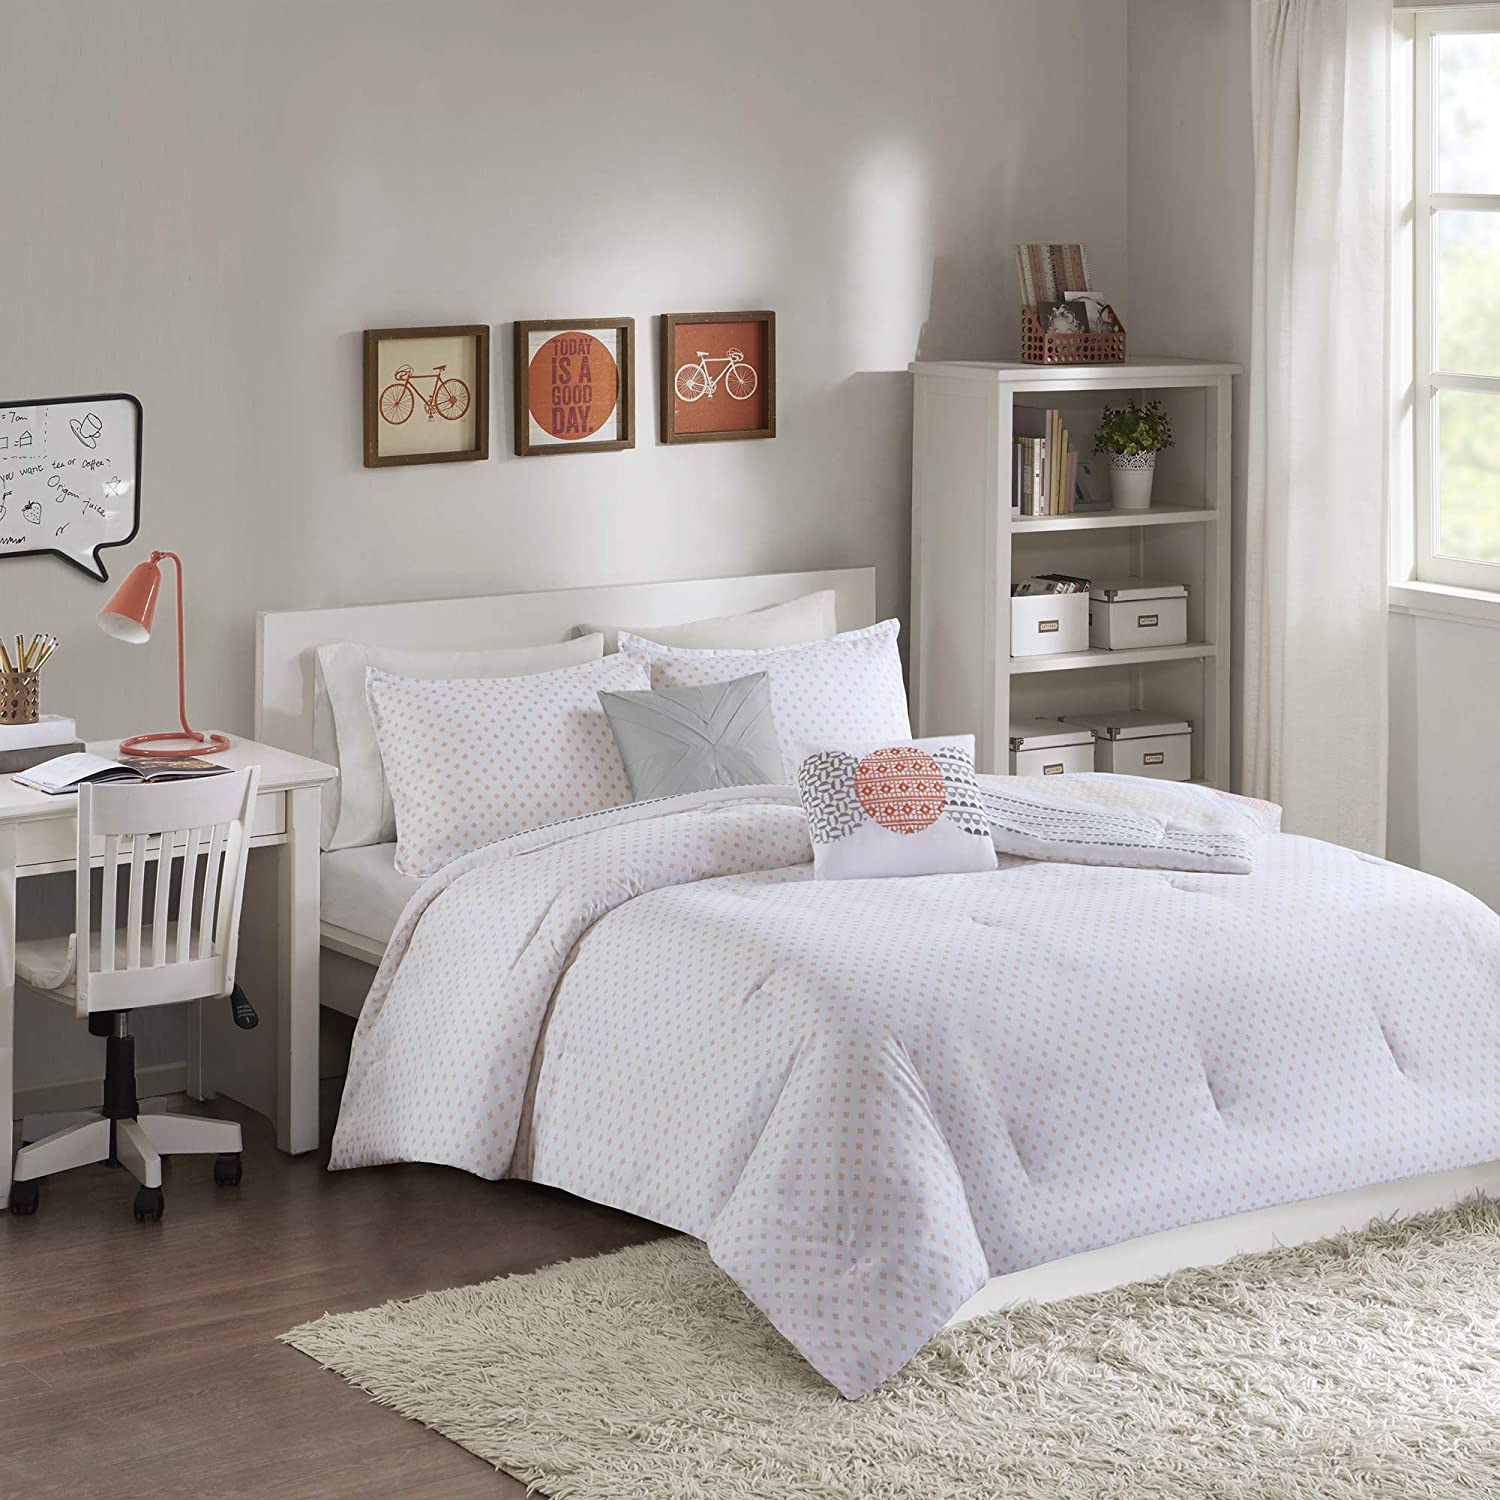 Intelligent Design Wilson 5 Piece Reversible Geometric Stripe Comforter Teen Bedroom Bedding Sets, Full/Queen Size, Coral